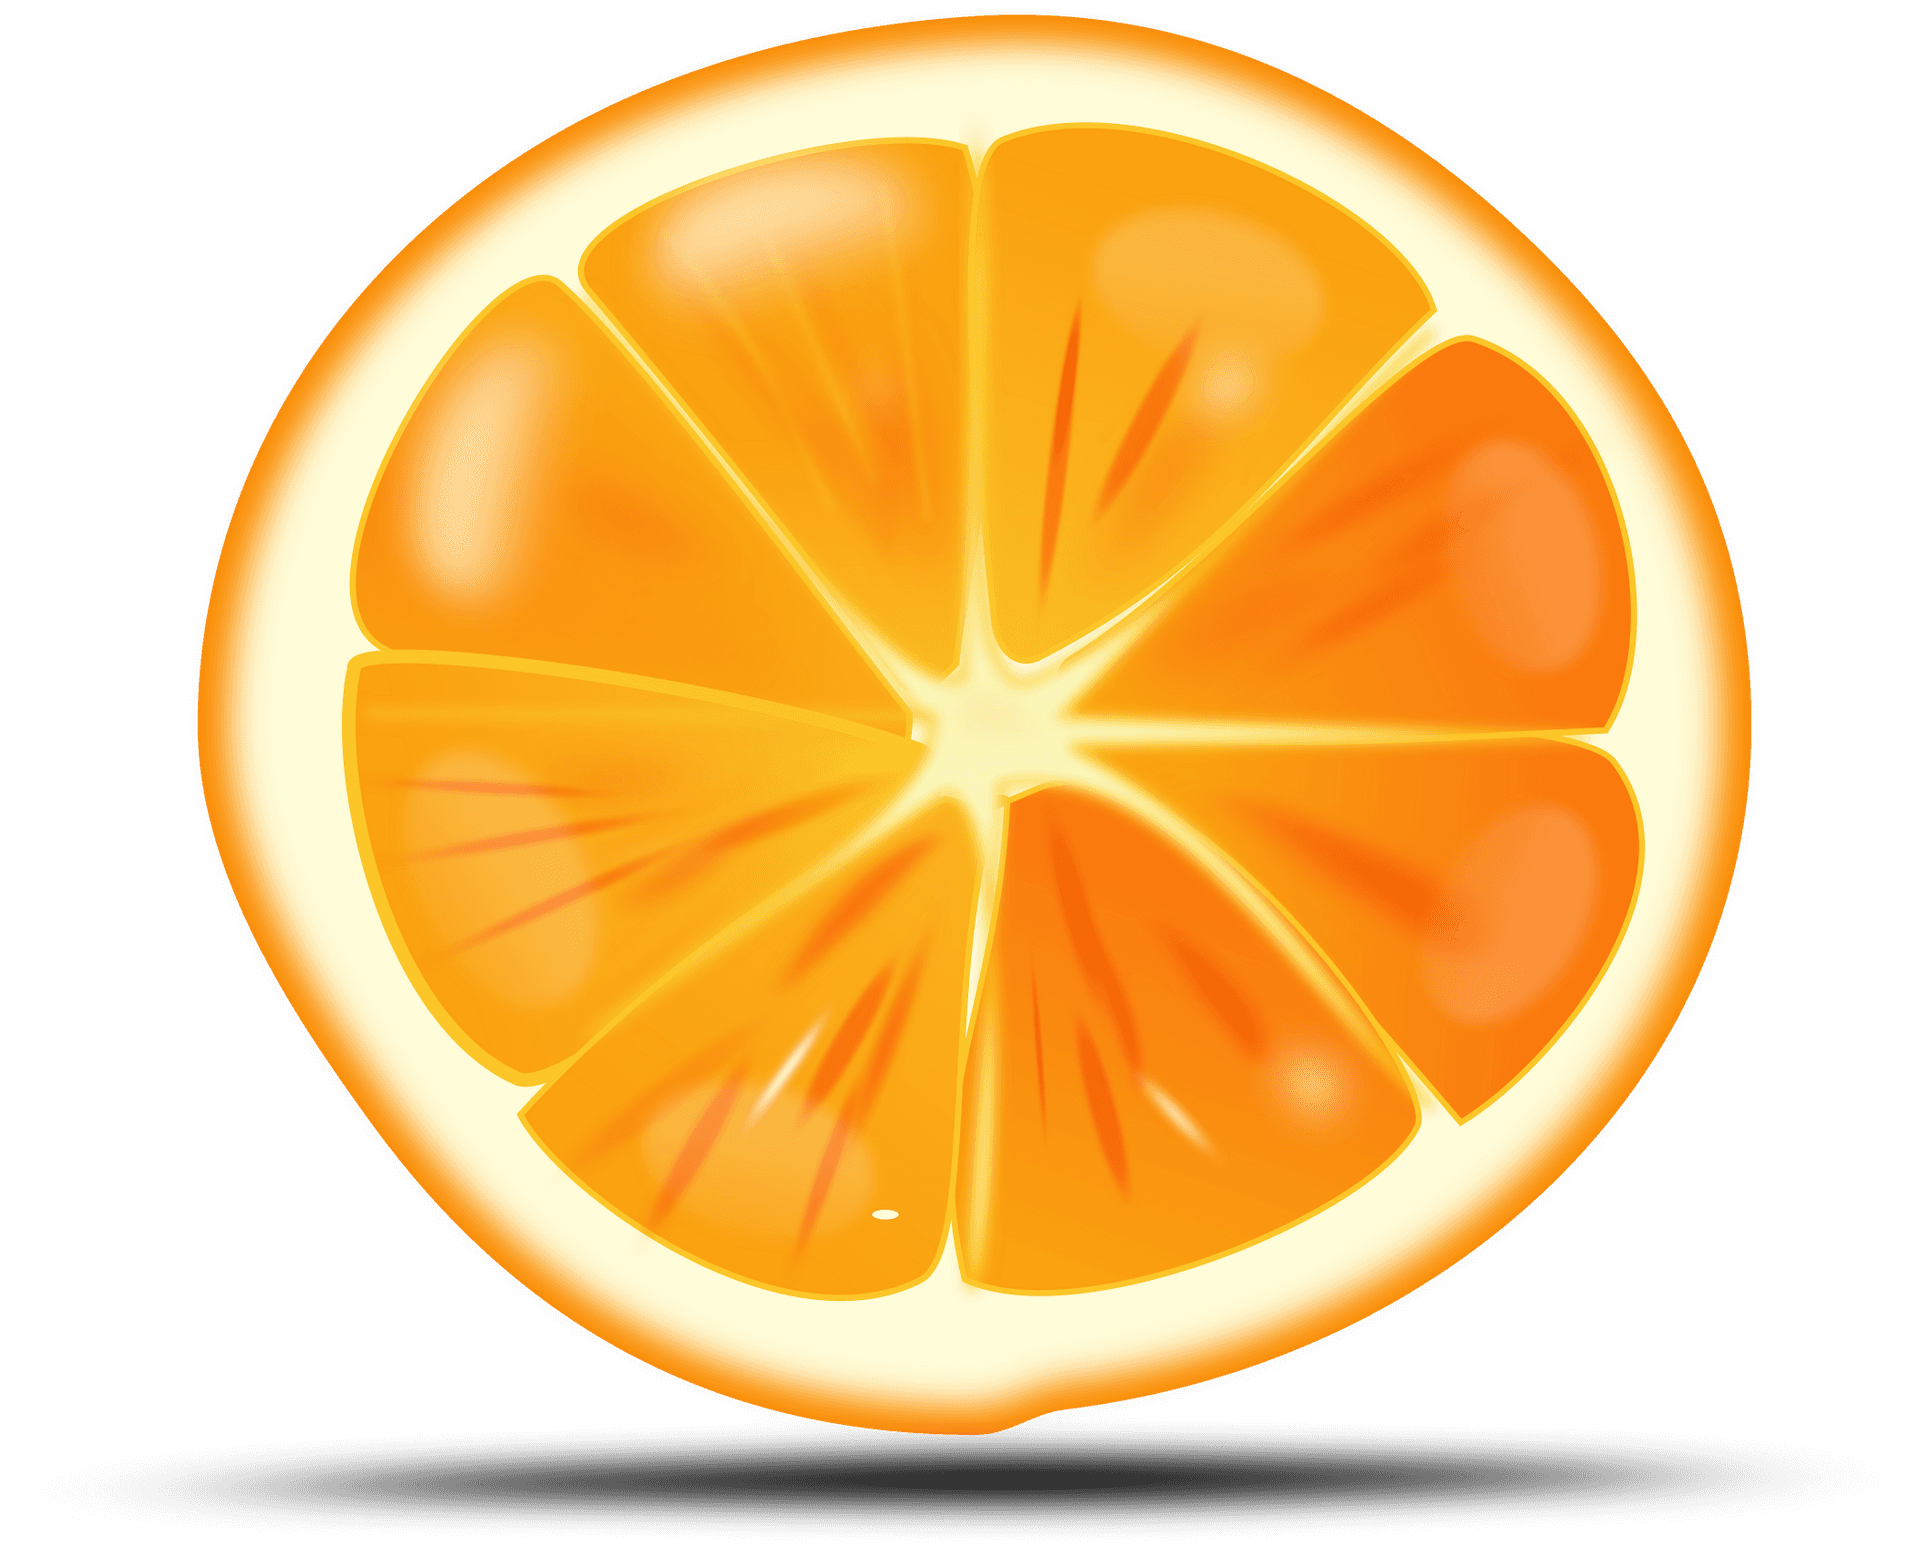 Vibrant Orange Slice Illustration PNG image